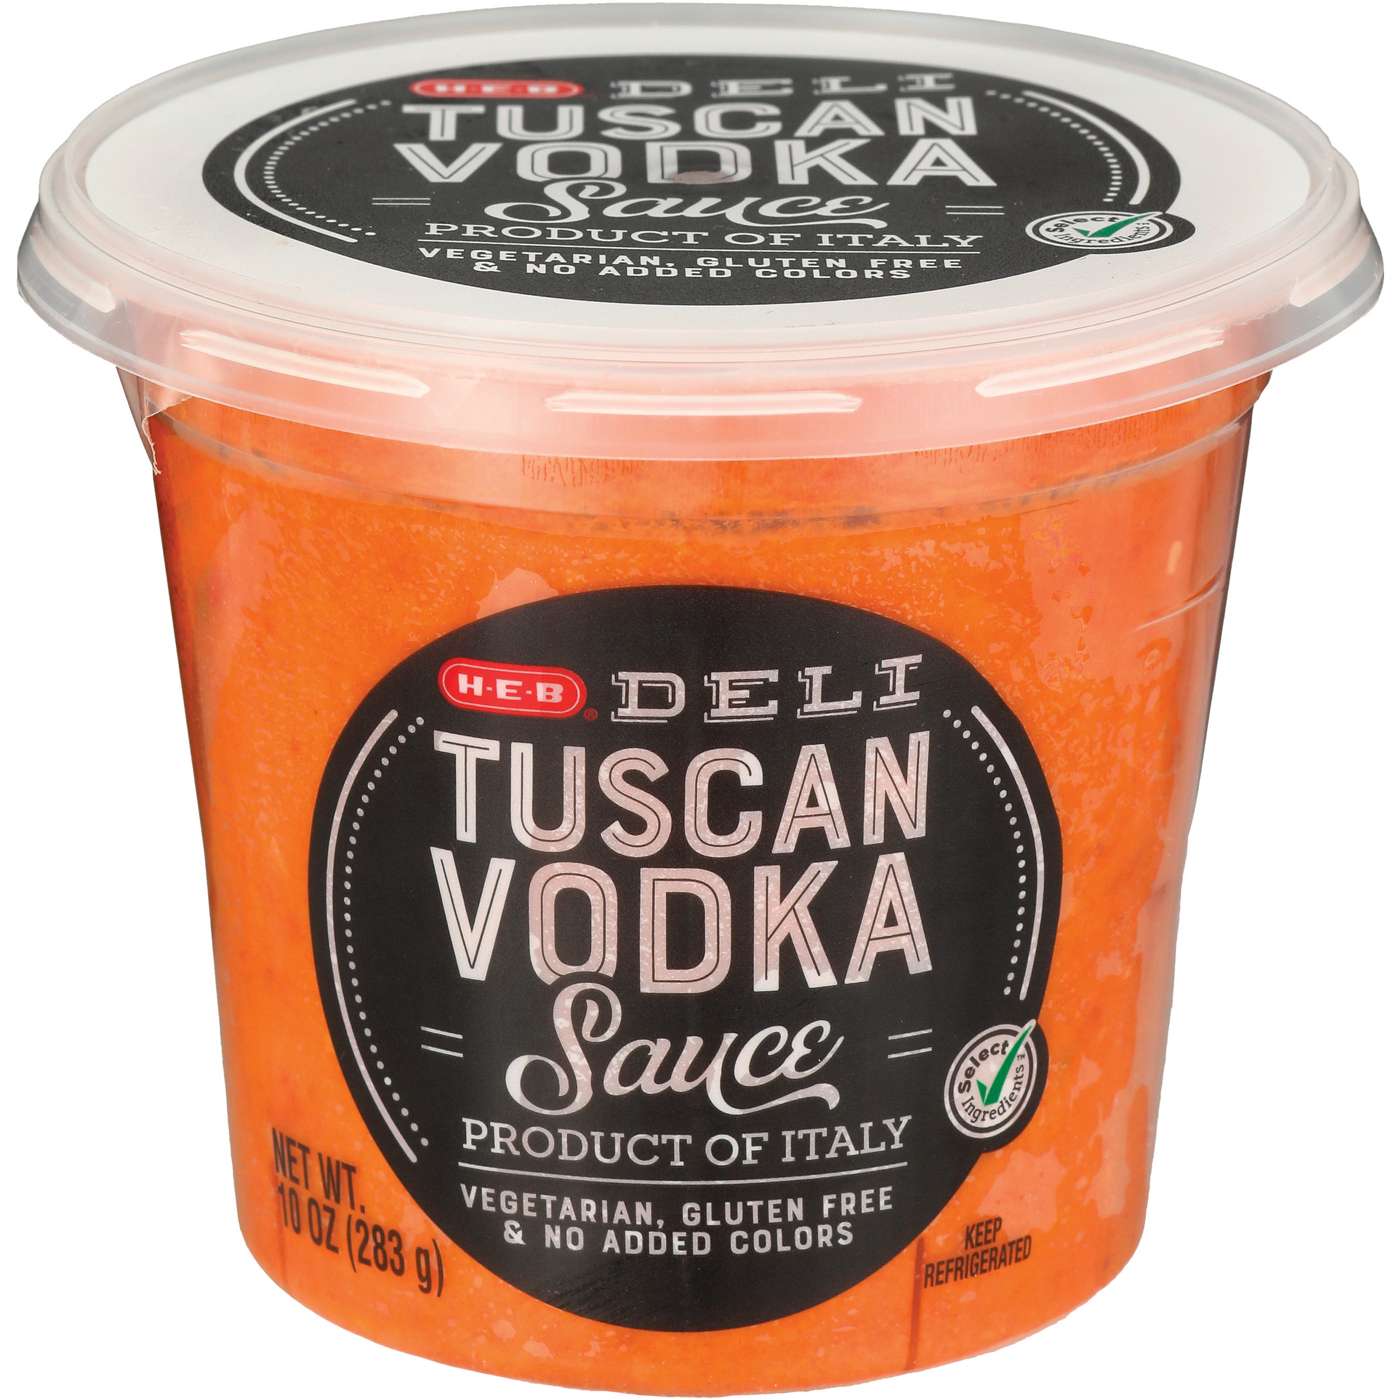 H-E-B Deli Tuscan Vodka Sauce; image 1 of 2